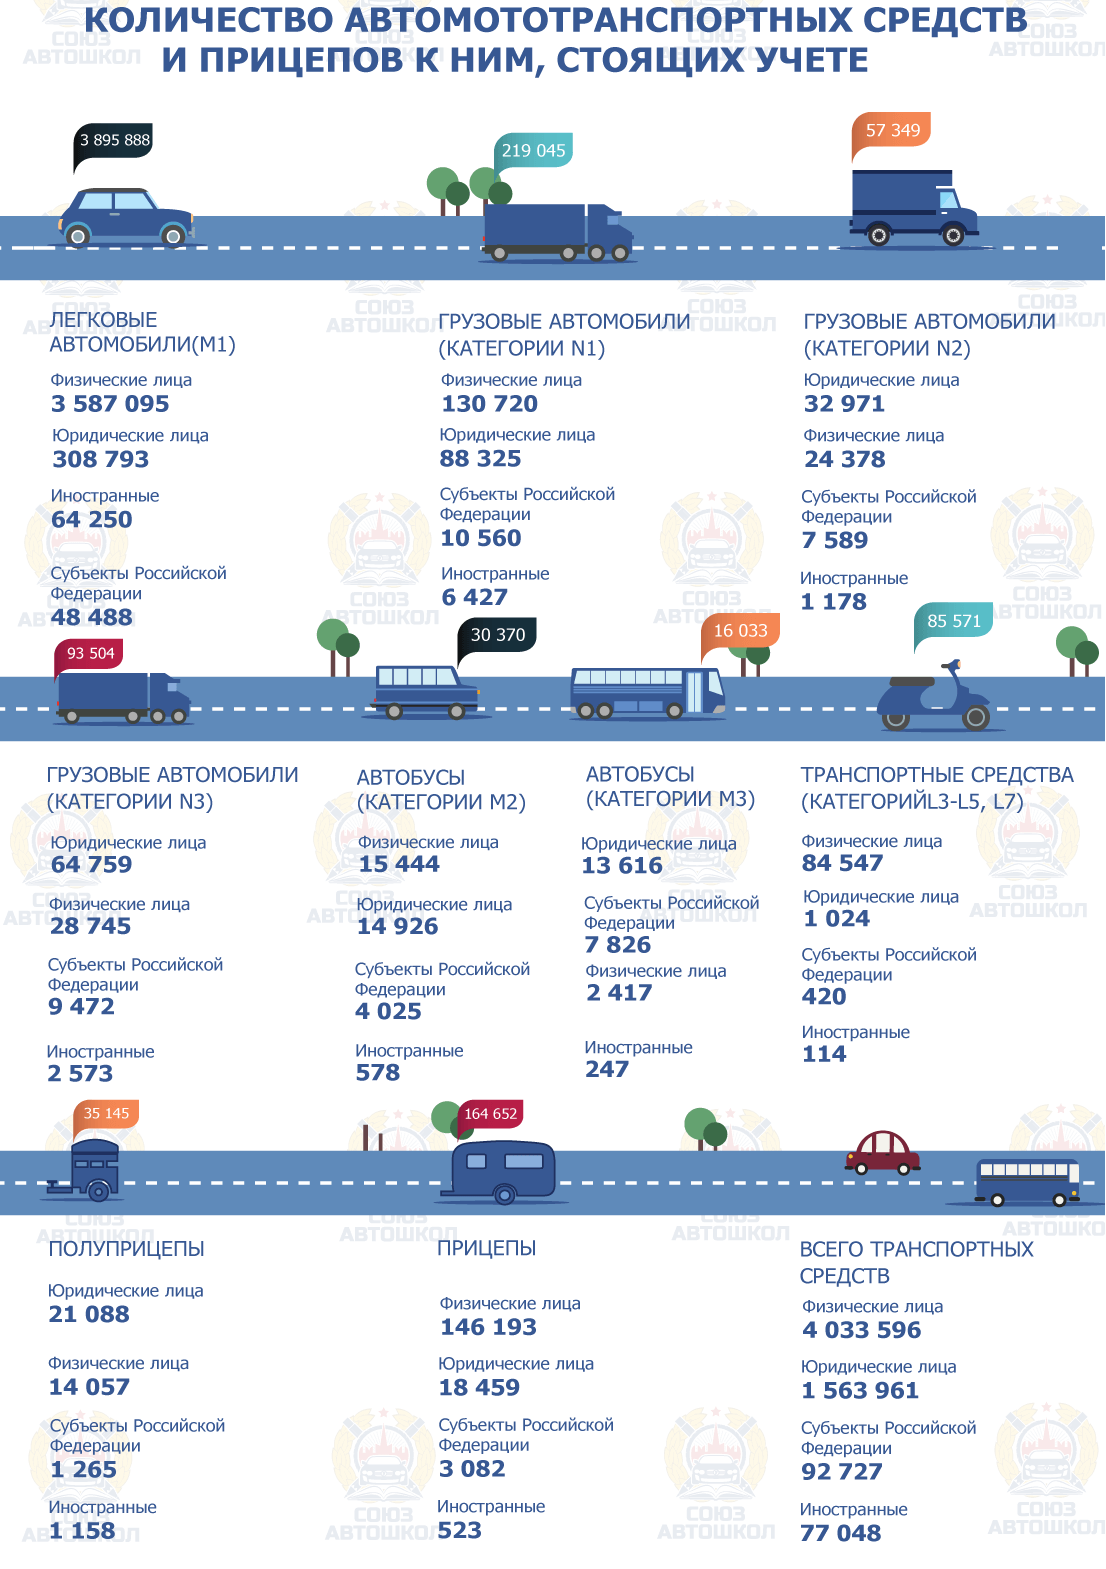 Инфографика от «Союза Автошкол» о количестве автомототранспортных средств и прицепов к ним, стоящих на учете